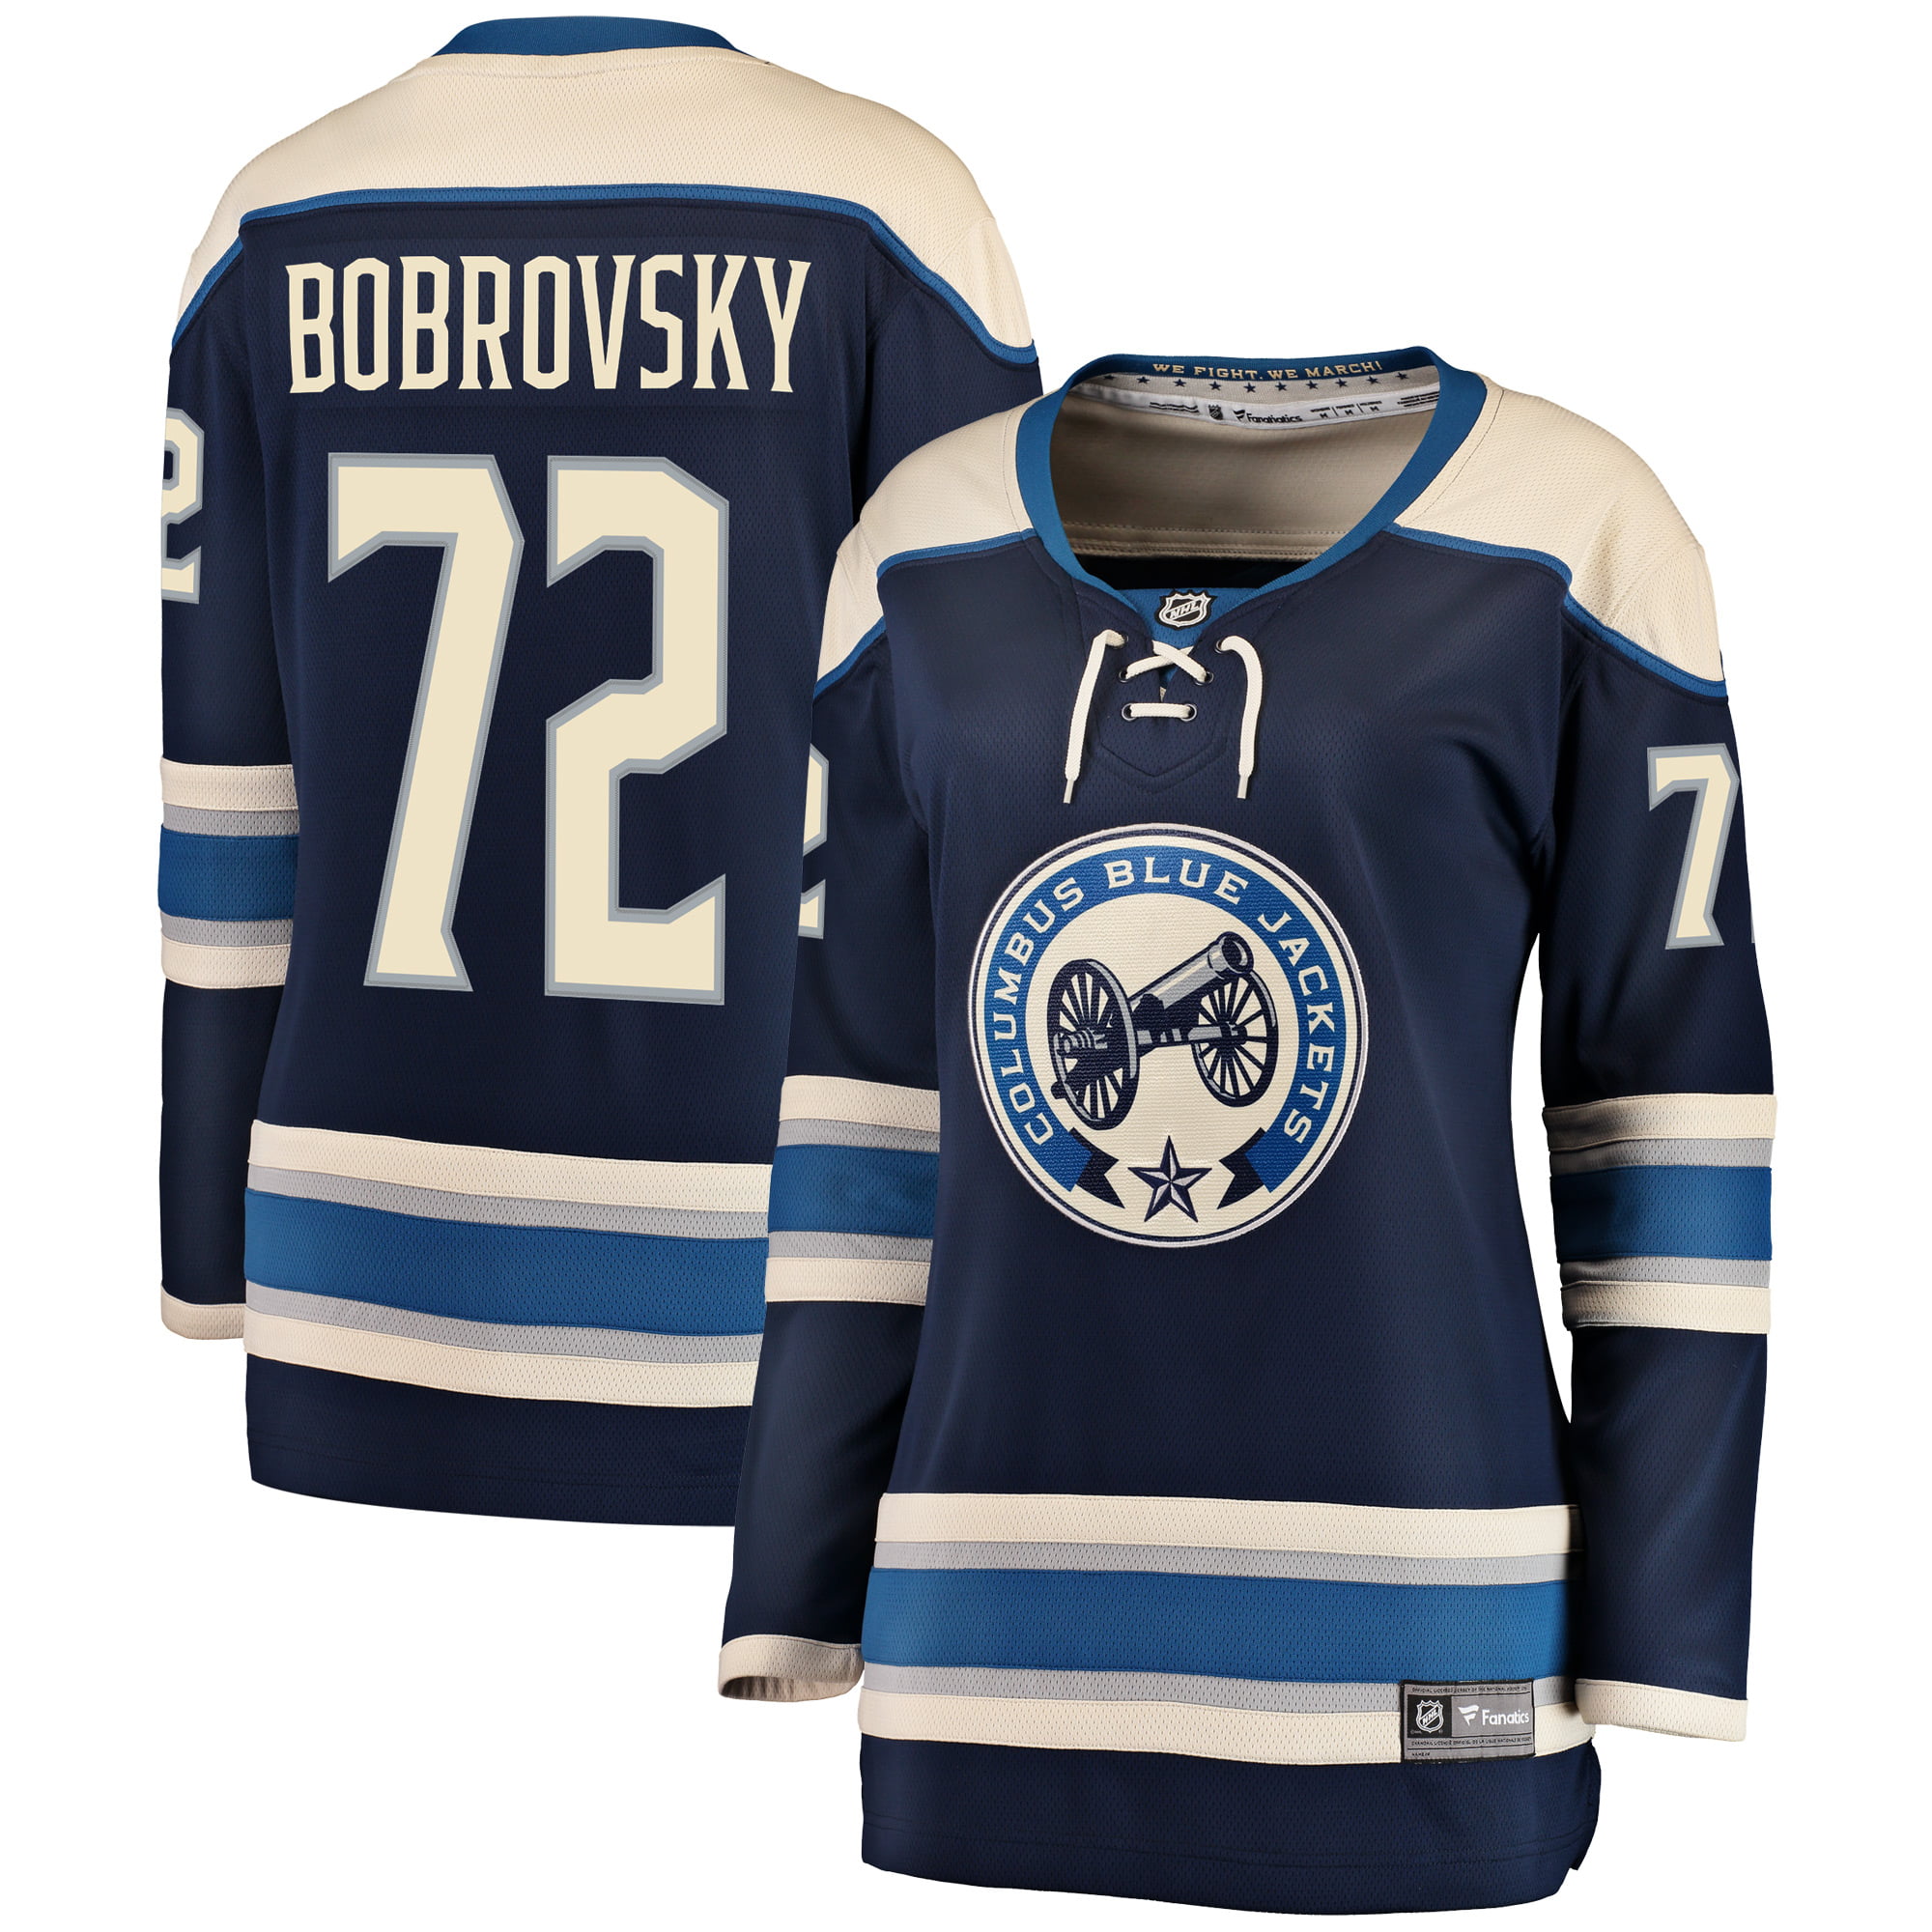 bobrovsky jersey blue jackets